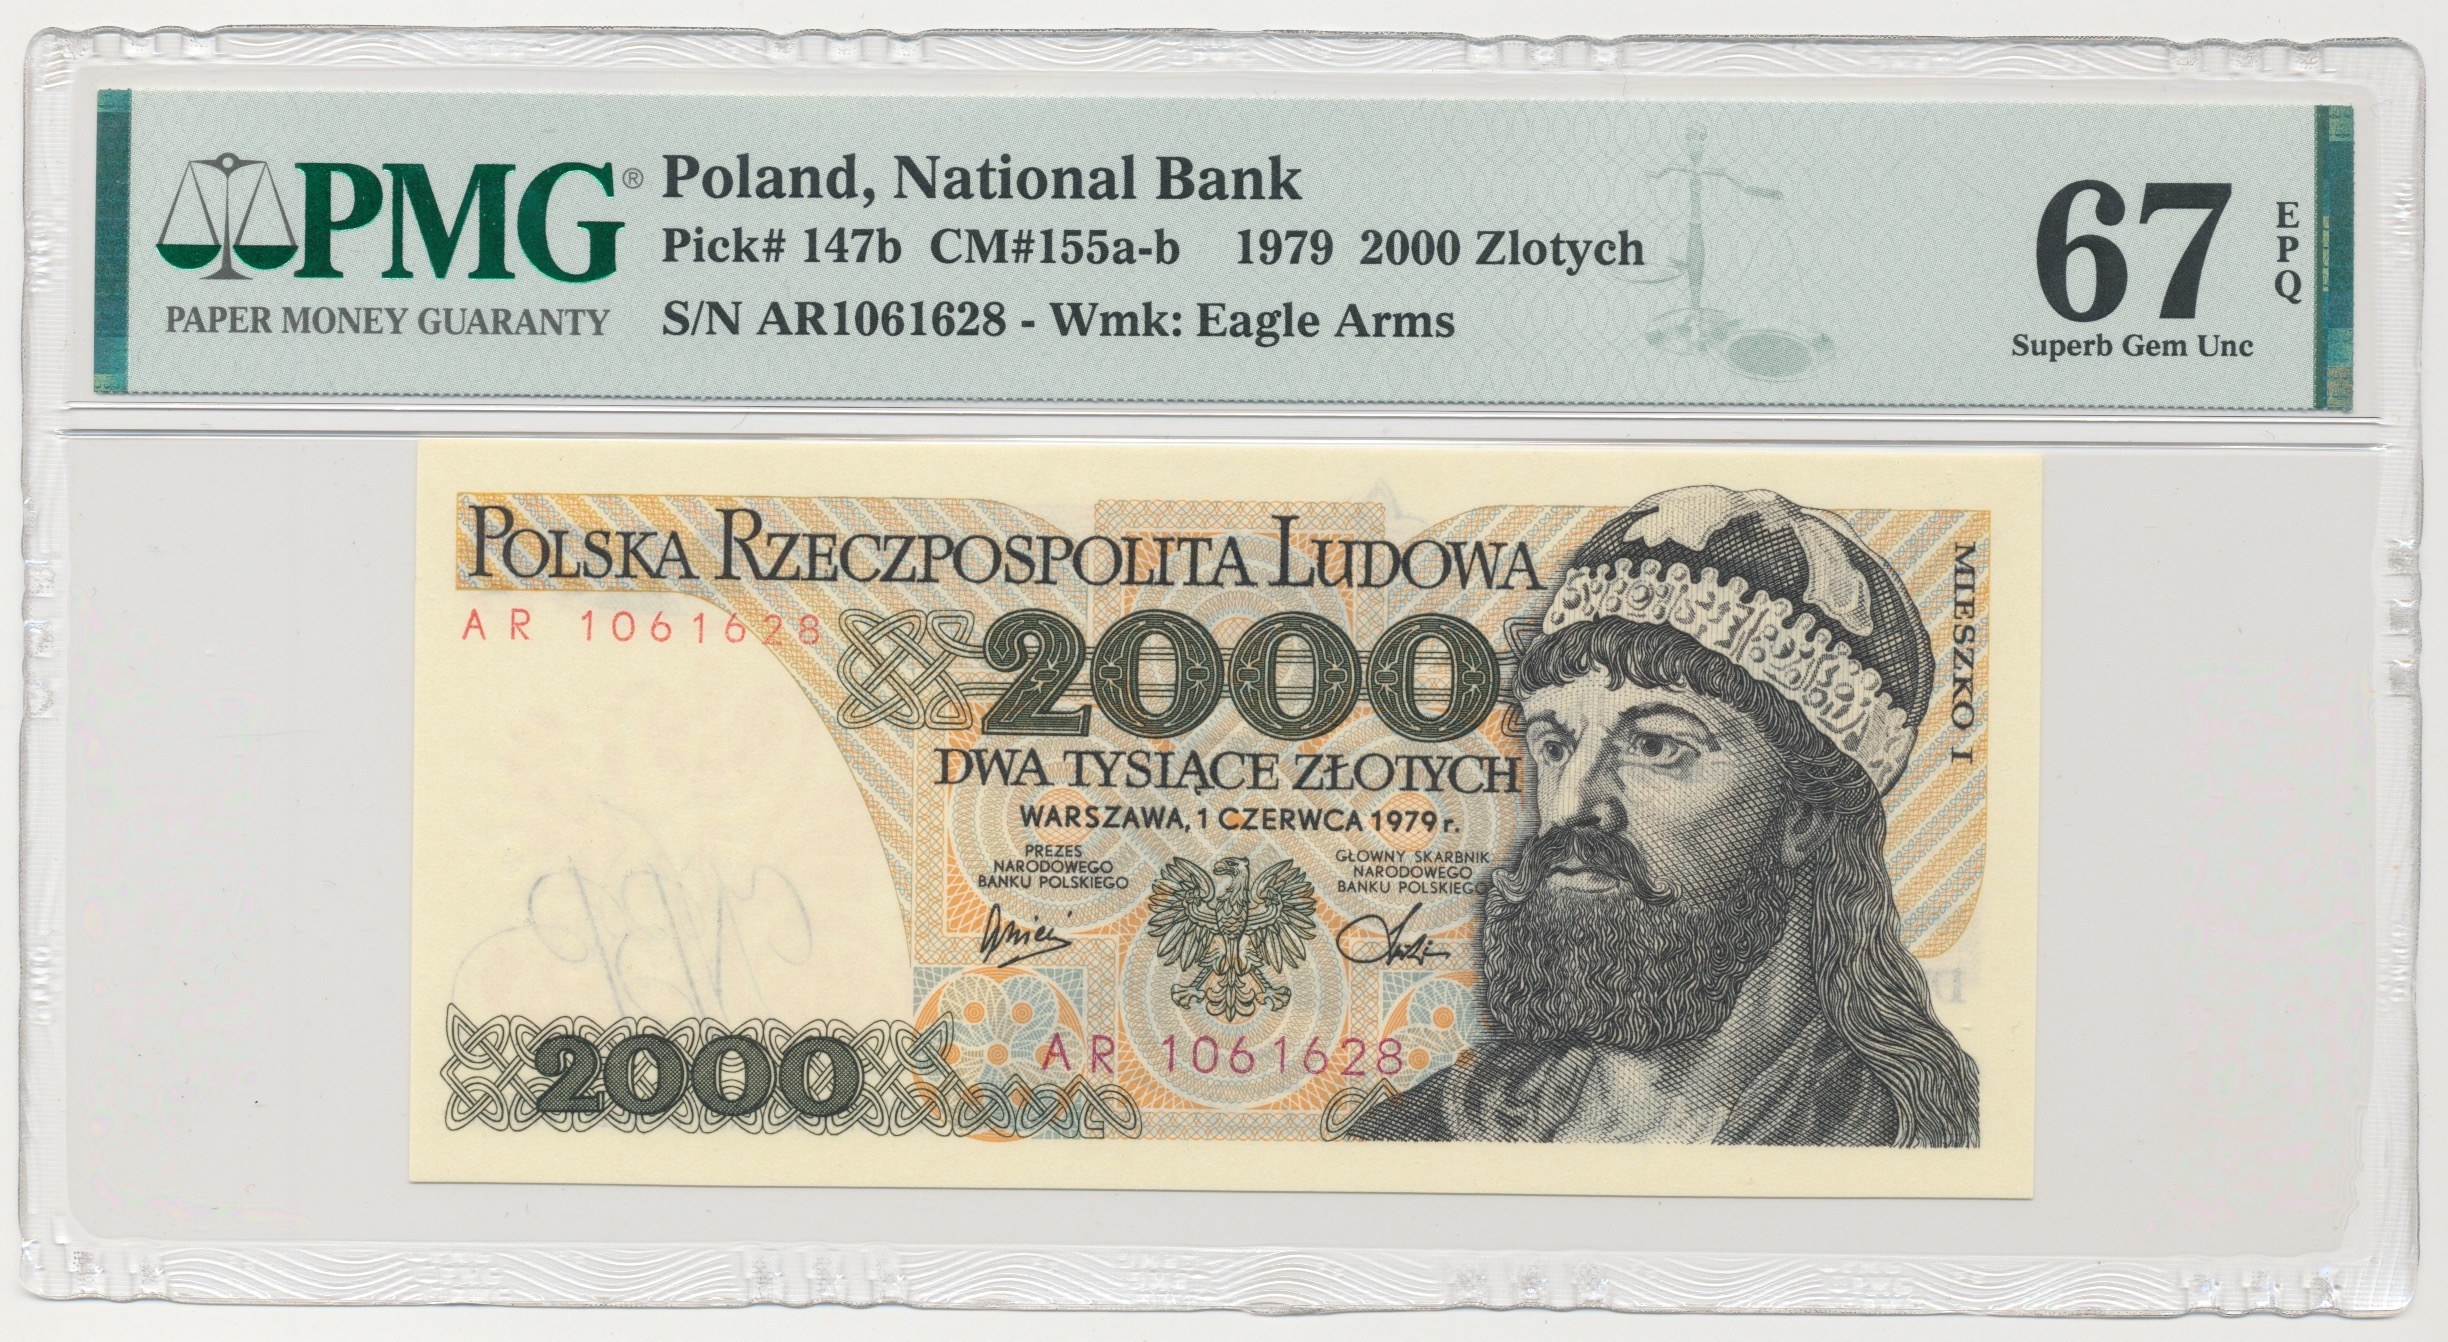 Банкнота сувенирная Польша 10 злотых Король Мешко 1 позолота UNC. 5000 злотых в рублях